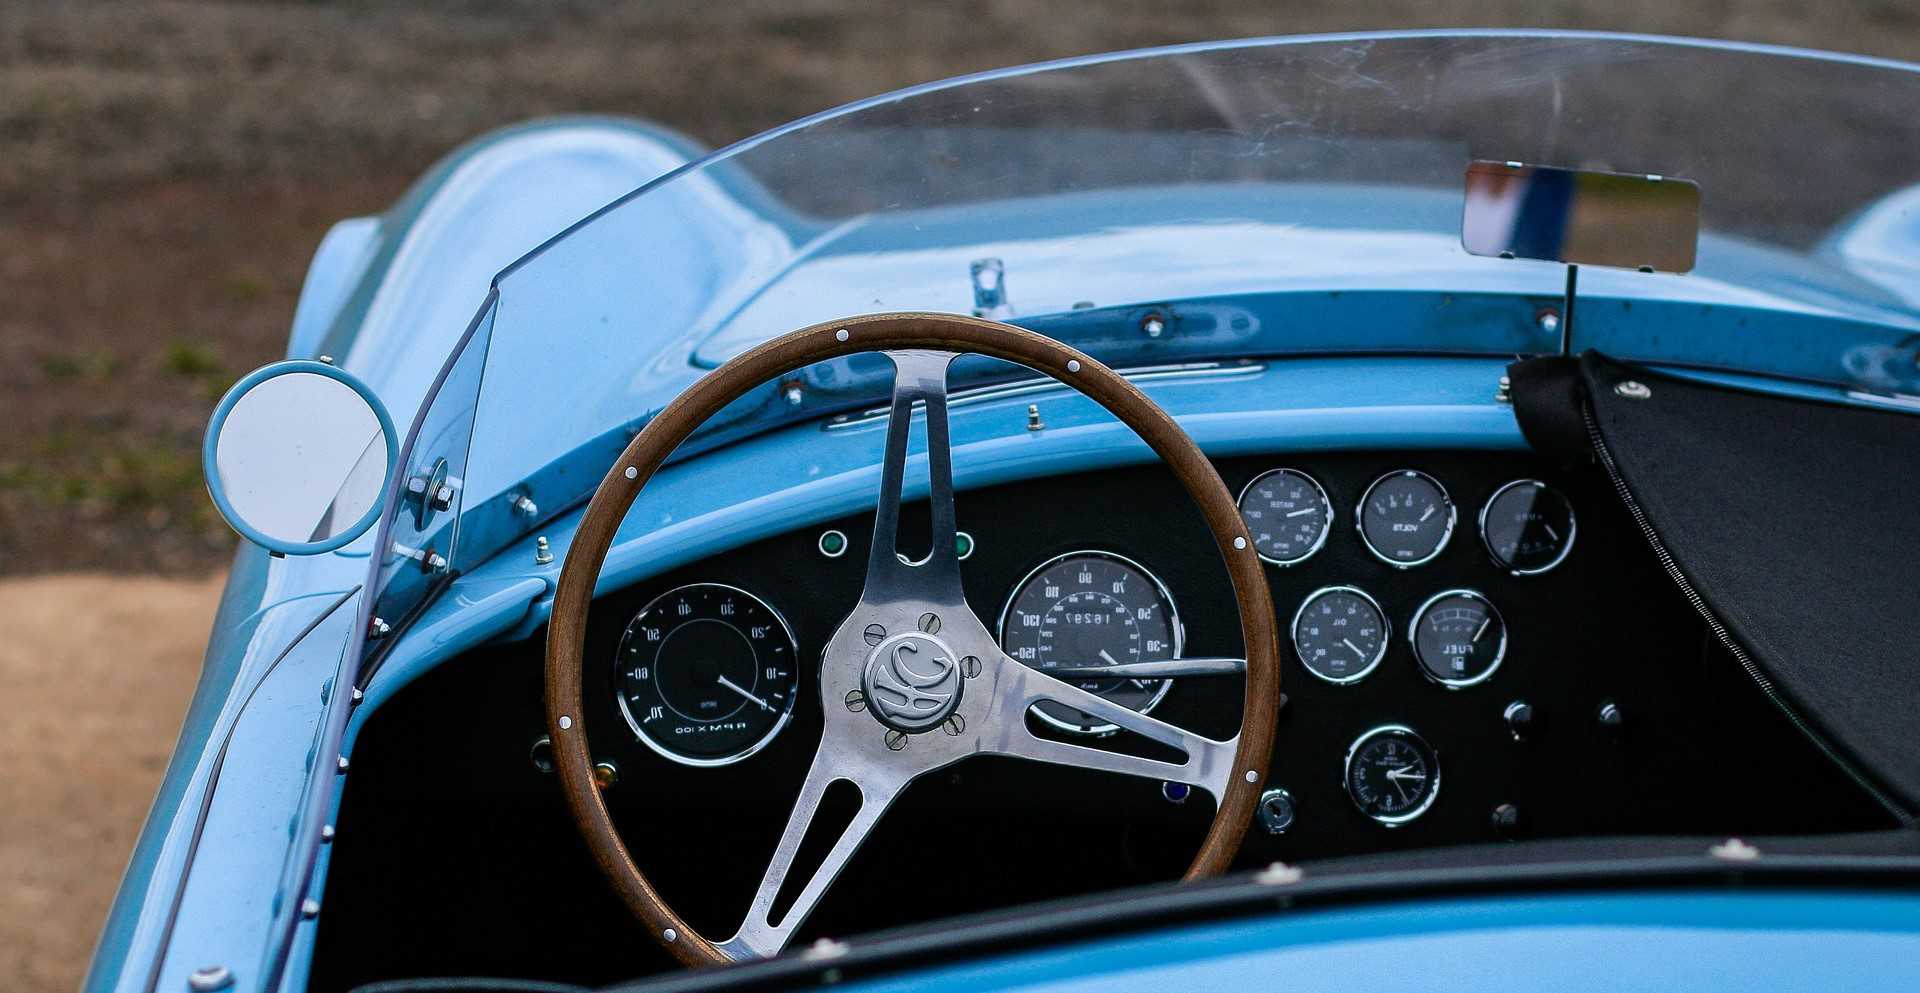 Classic Blue Car Interior | Goodwill Car Donations